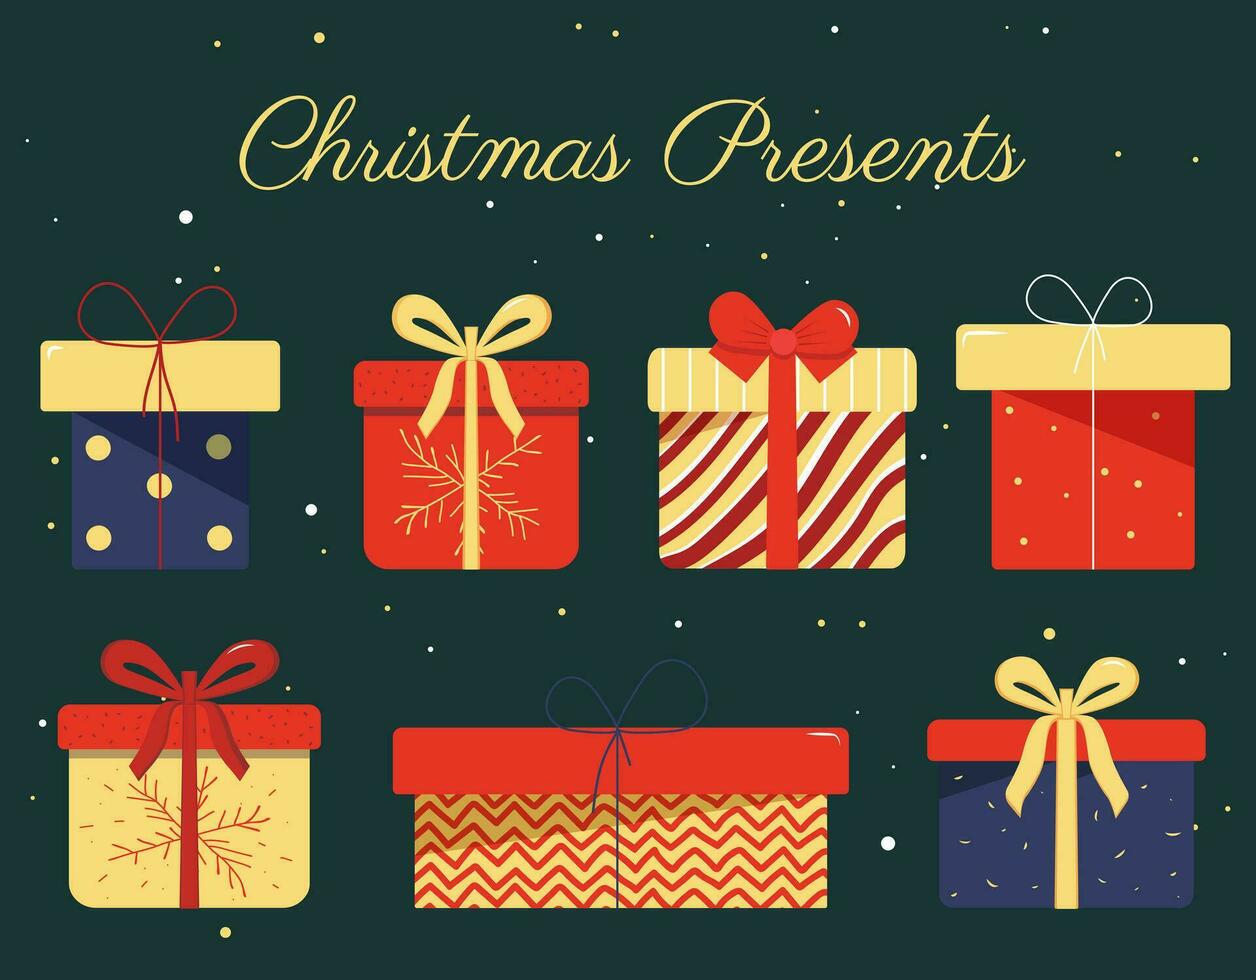 Vektor Illustration von verschiedene Weihnachten Geschenk Kisten im eben Stil. Weihnachten Satz. Urlaub und Weihnachten die Geschenke.